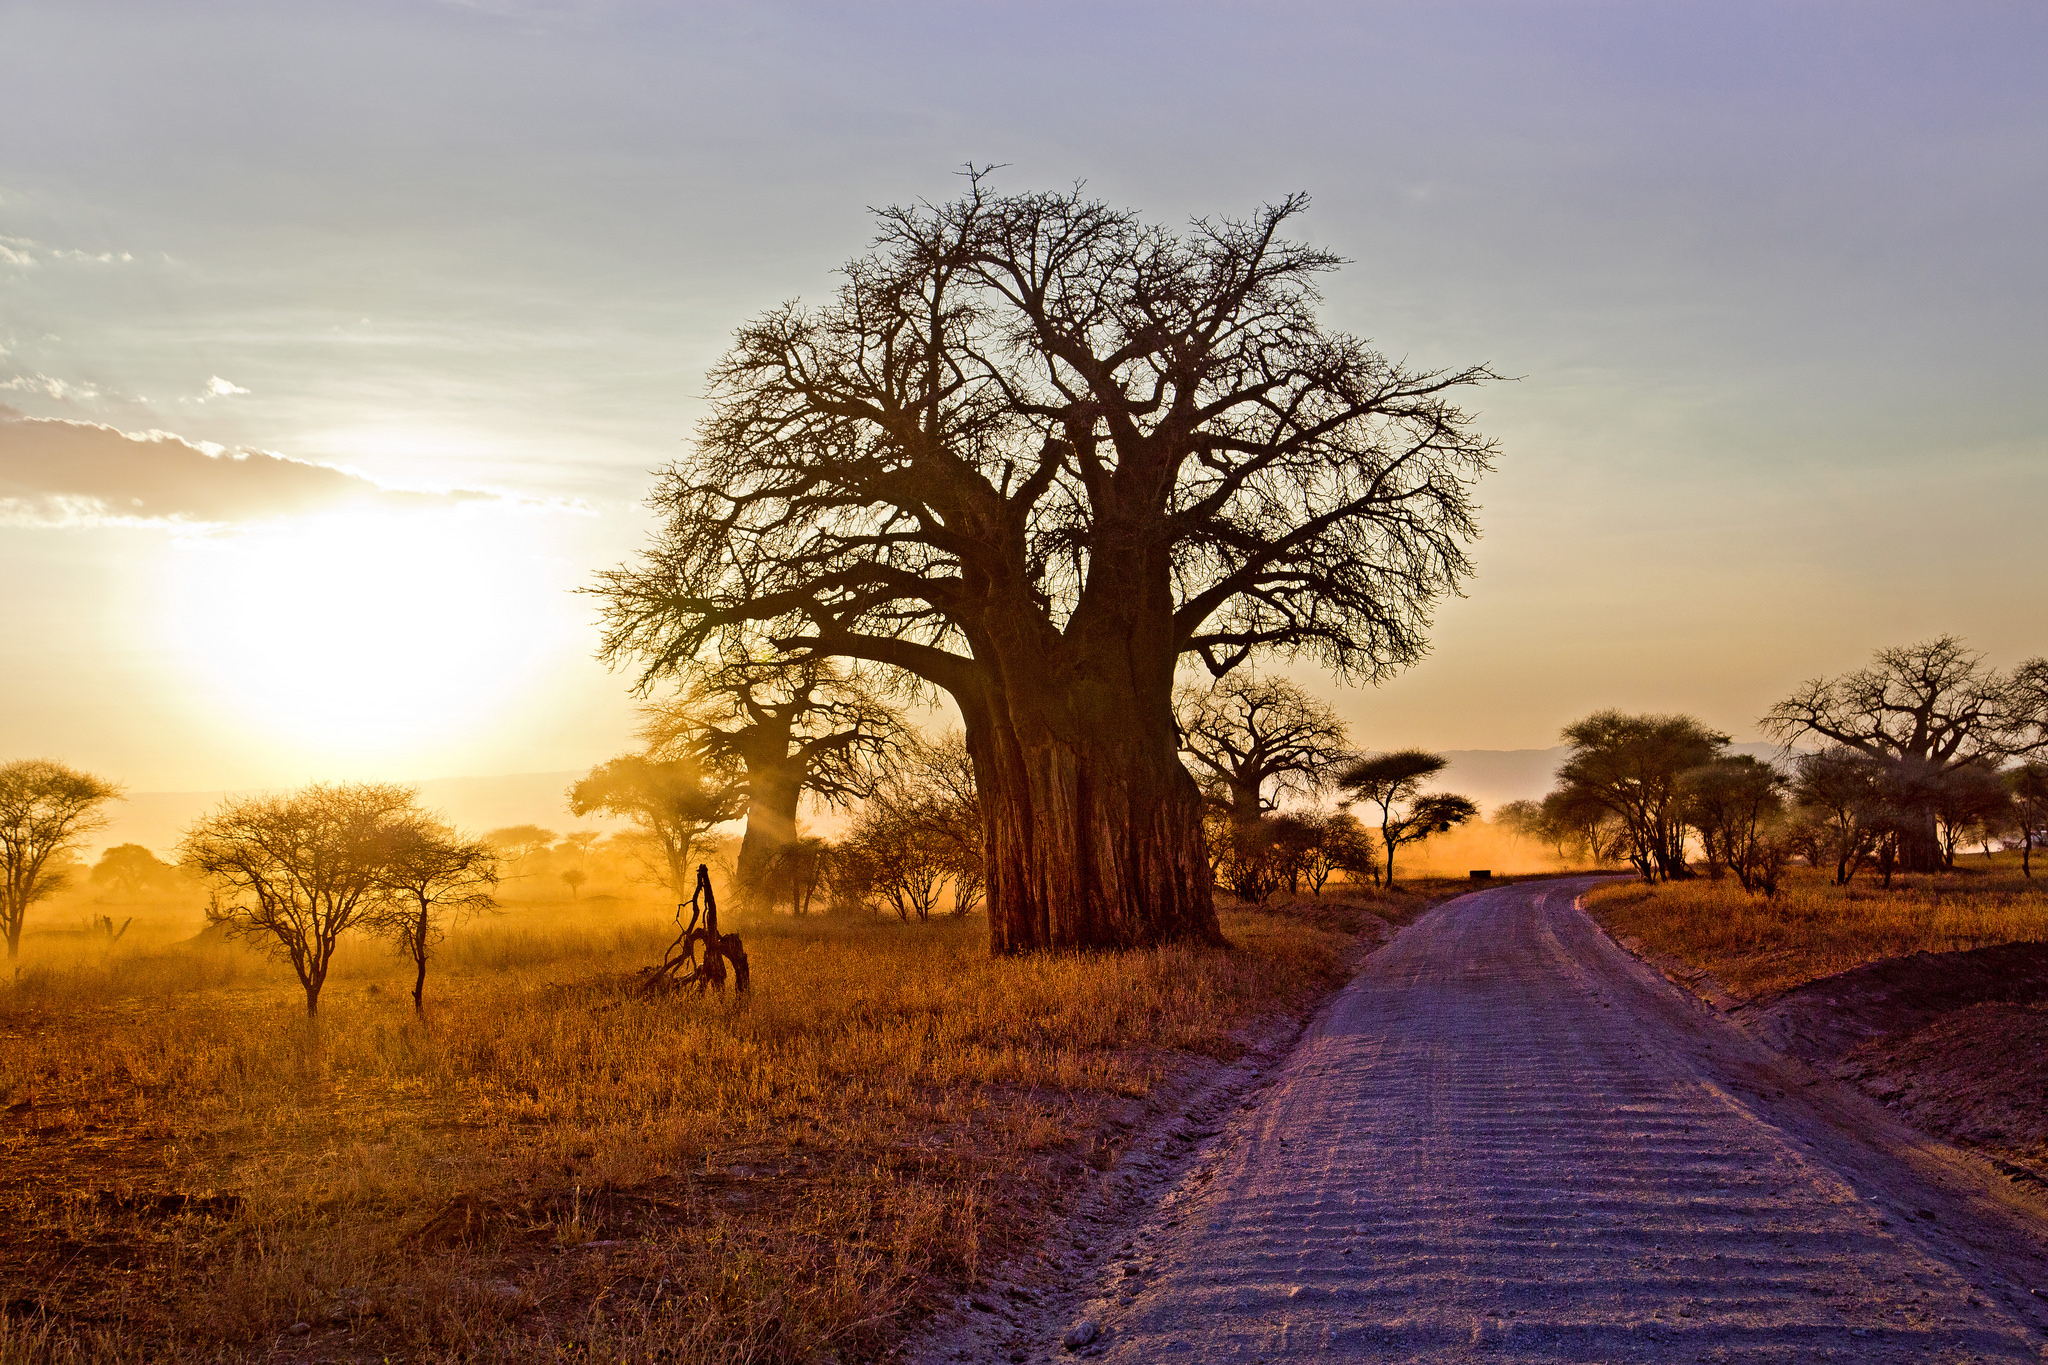 378234 descargar imagen tierra/naturaleza, arbol del baobab, áfrica, paisaje, camino, sabana, rayo de sol, amanecer, árbol, árboles: fondos de pantalla y protectores de pantalla gratis